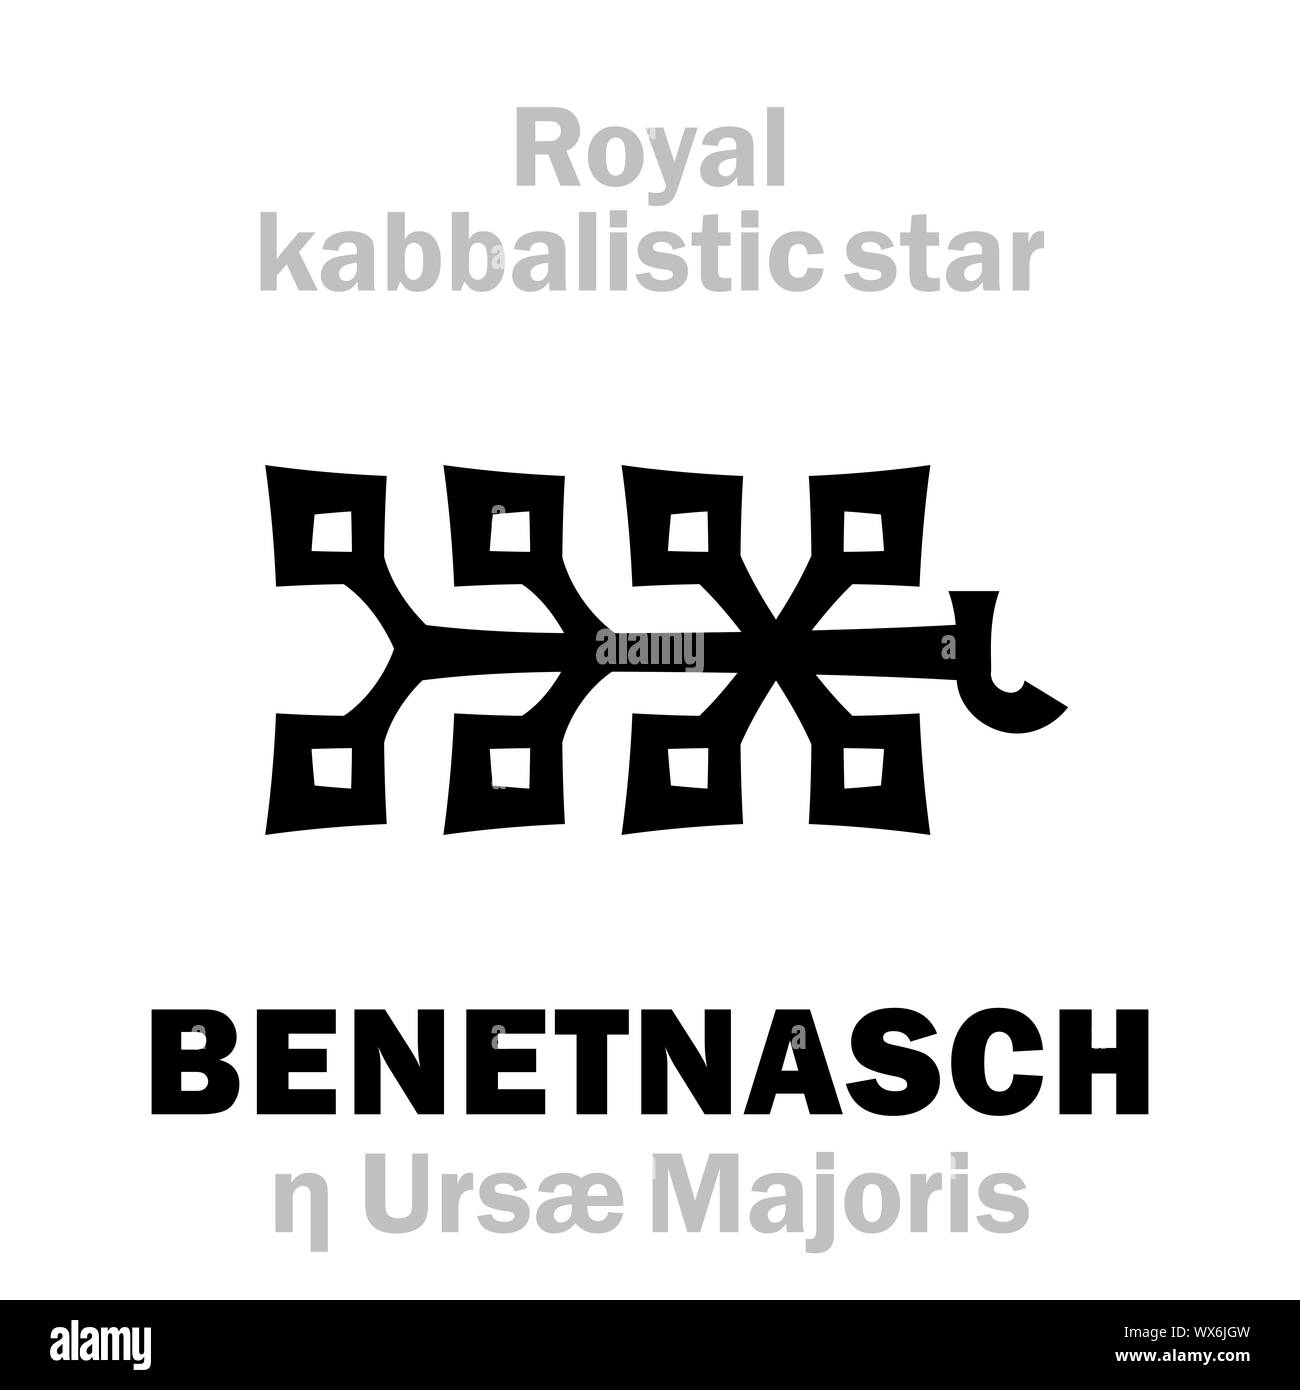 Astrología: ALKAÏD / BENETNASCH (Royal Behenian cabalística star) Foto de stock